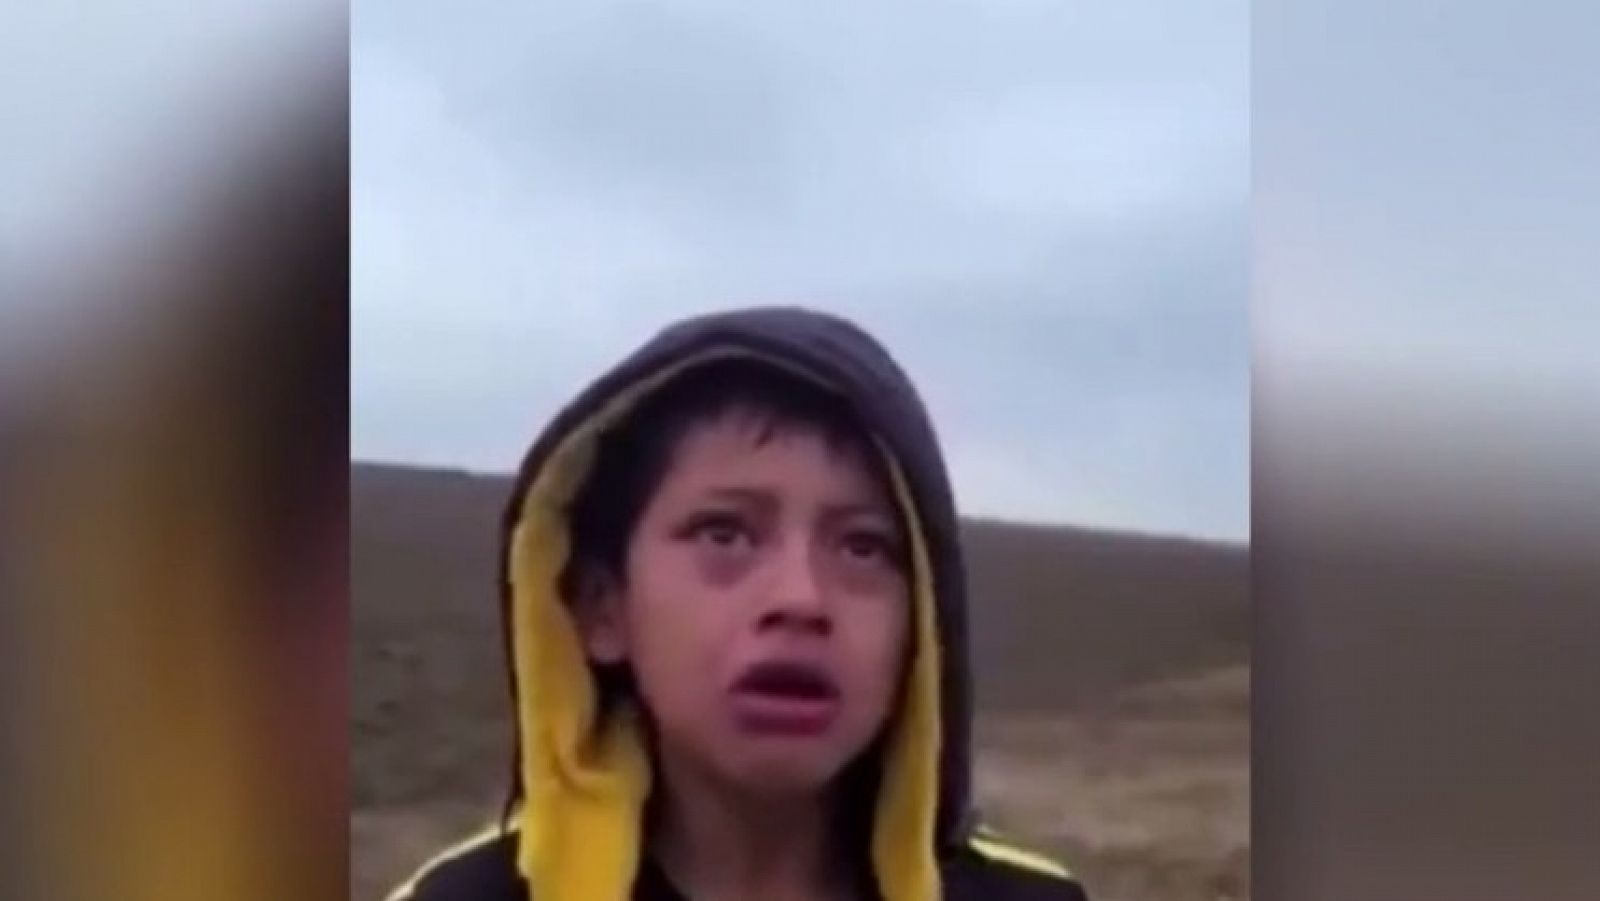 Captura del video del menor abandonado que se hizo viral en todo el mundo